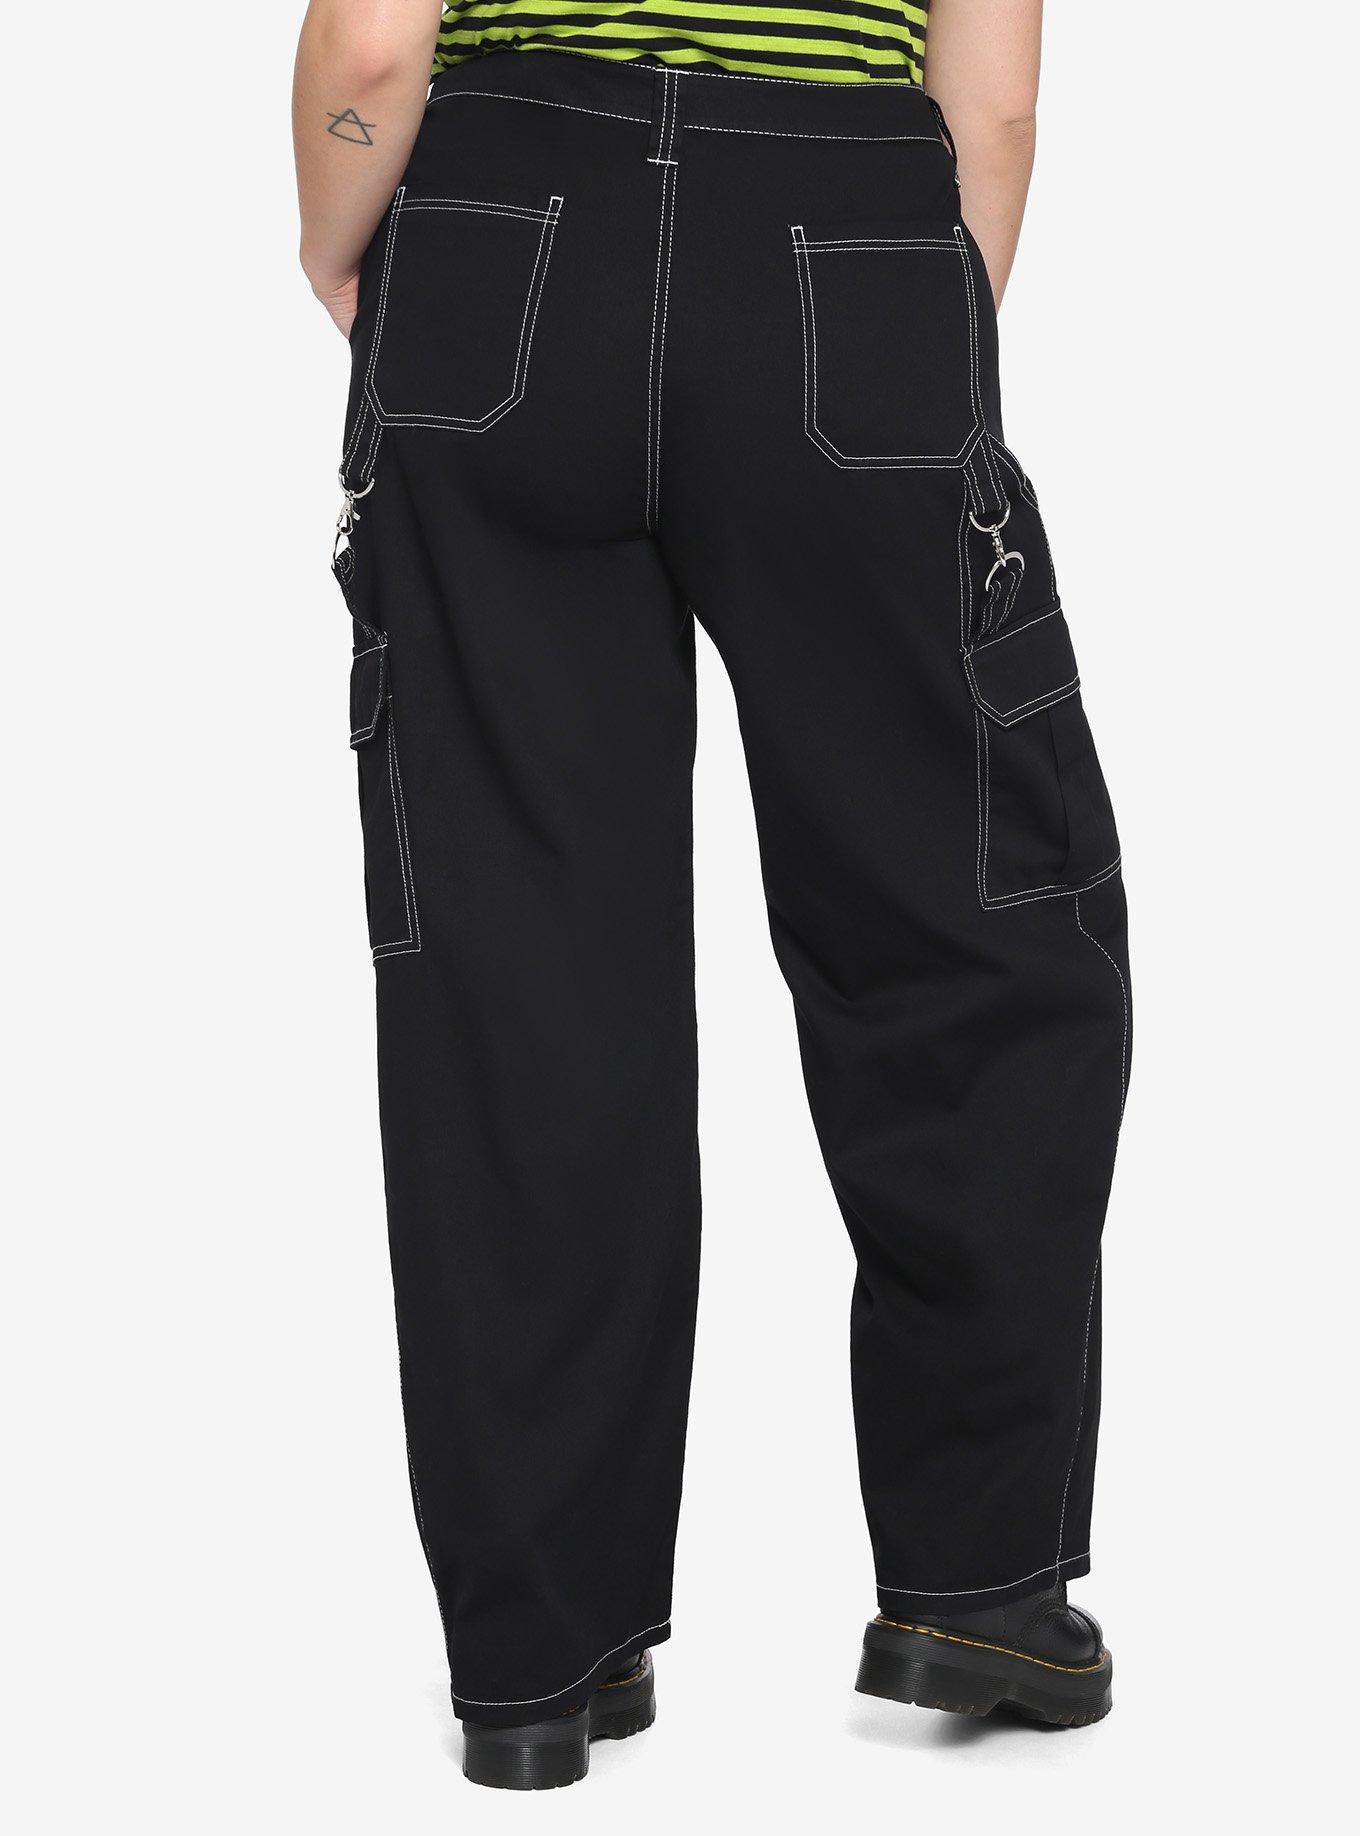 HT Denim Black & White Stitch Hi-Rise Carpenter Pants Plus Size, BLACK, alternate